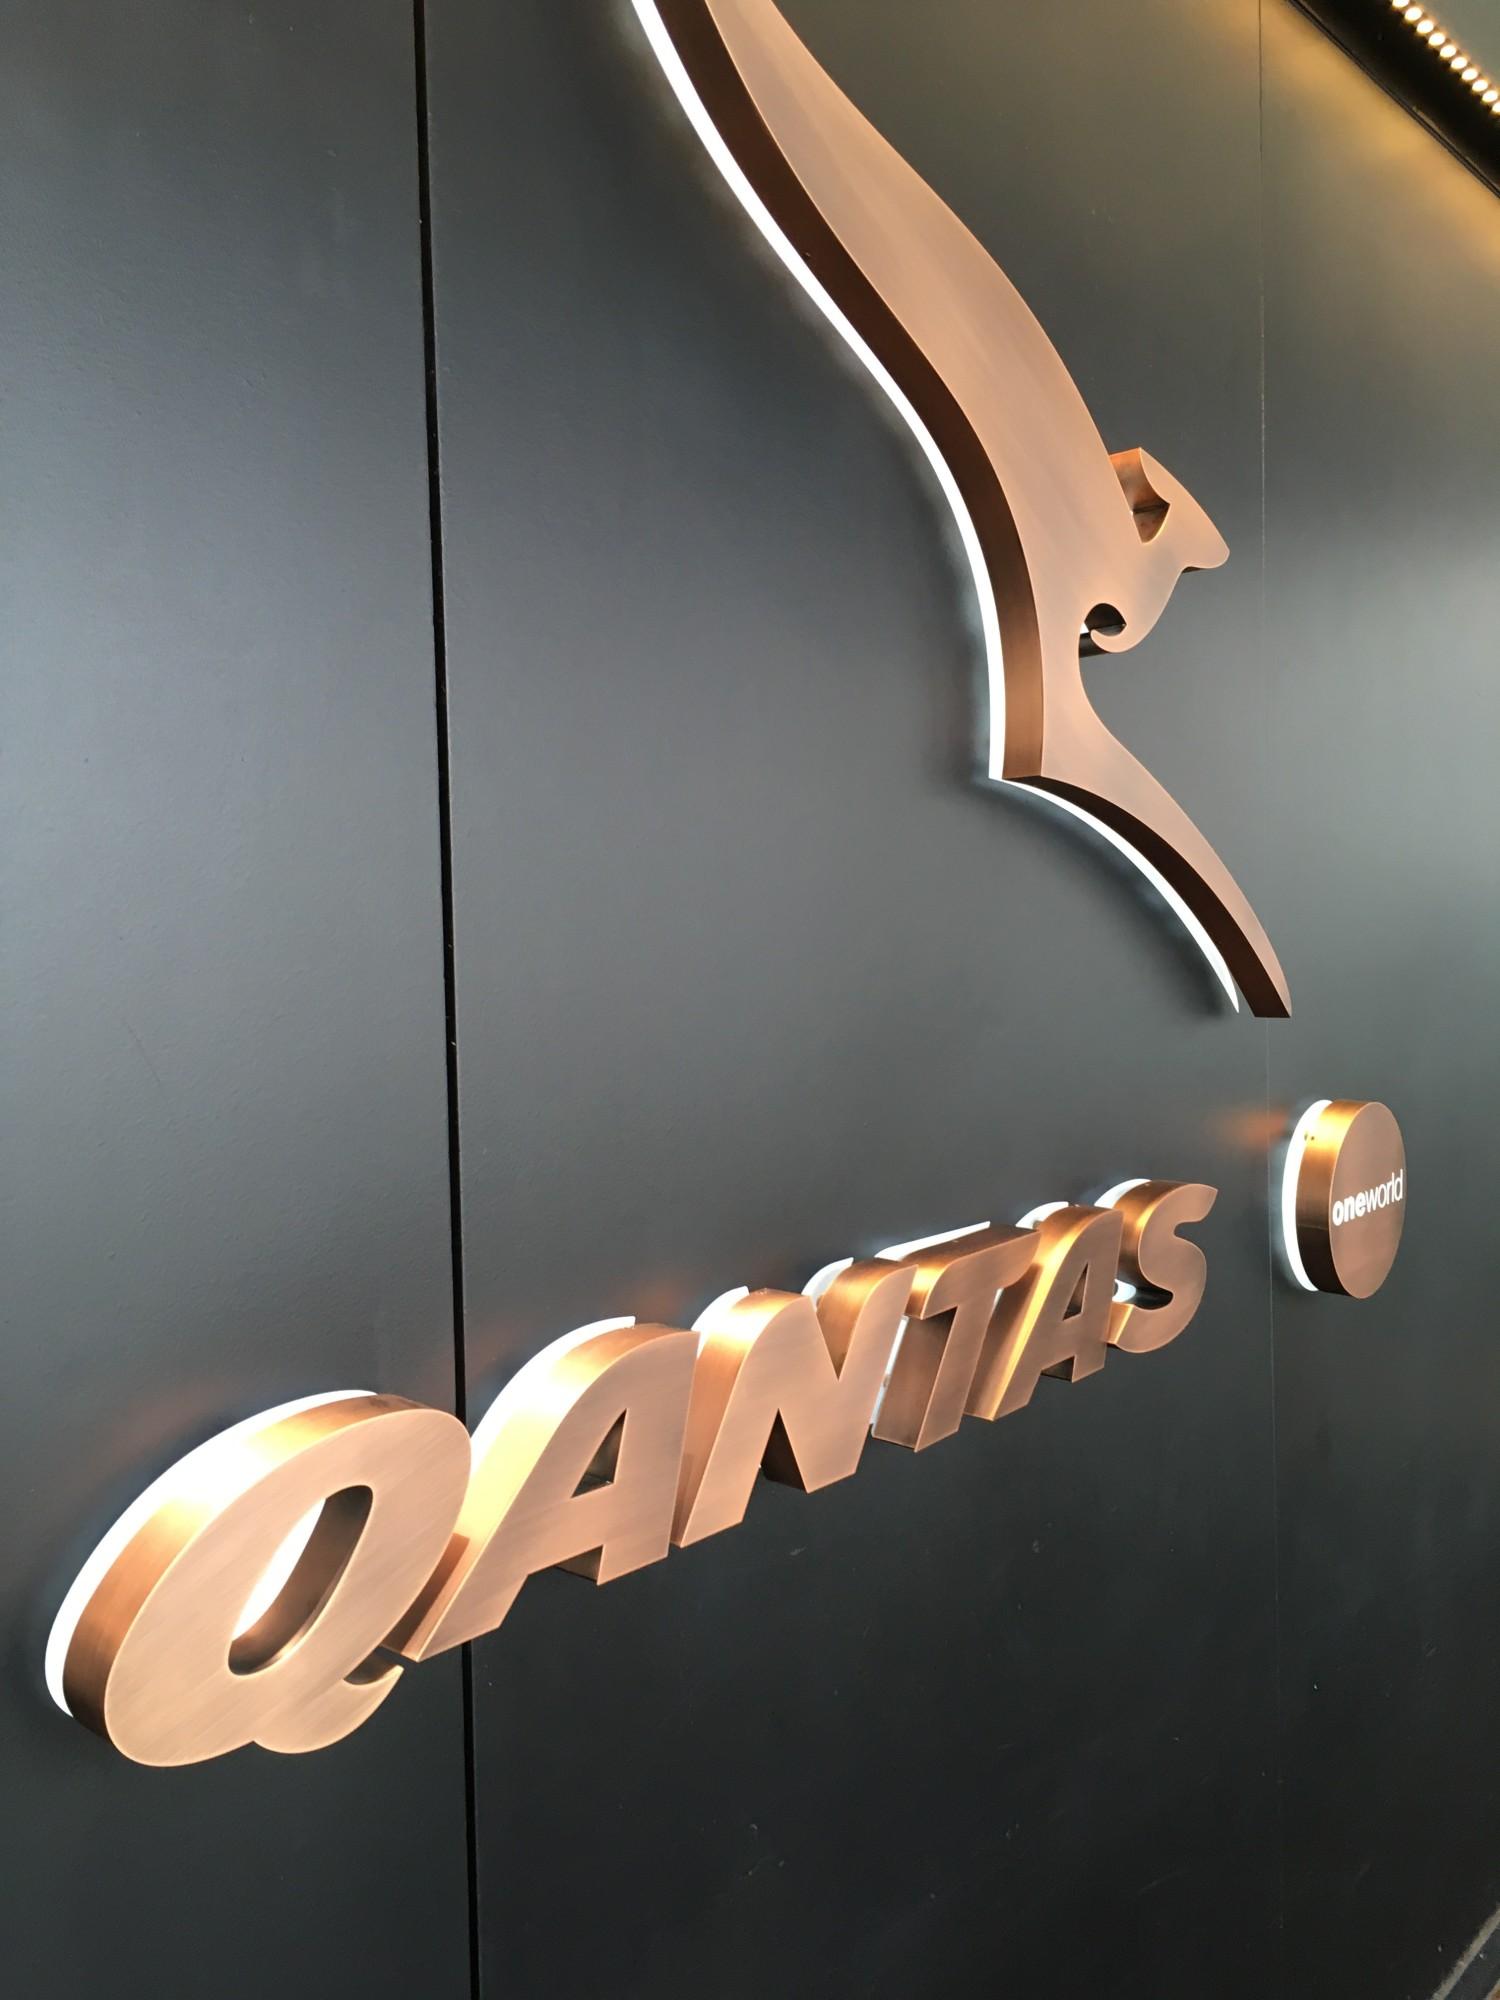 The Qantas Hong Kong Lounge image 91 of 99